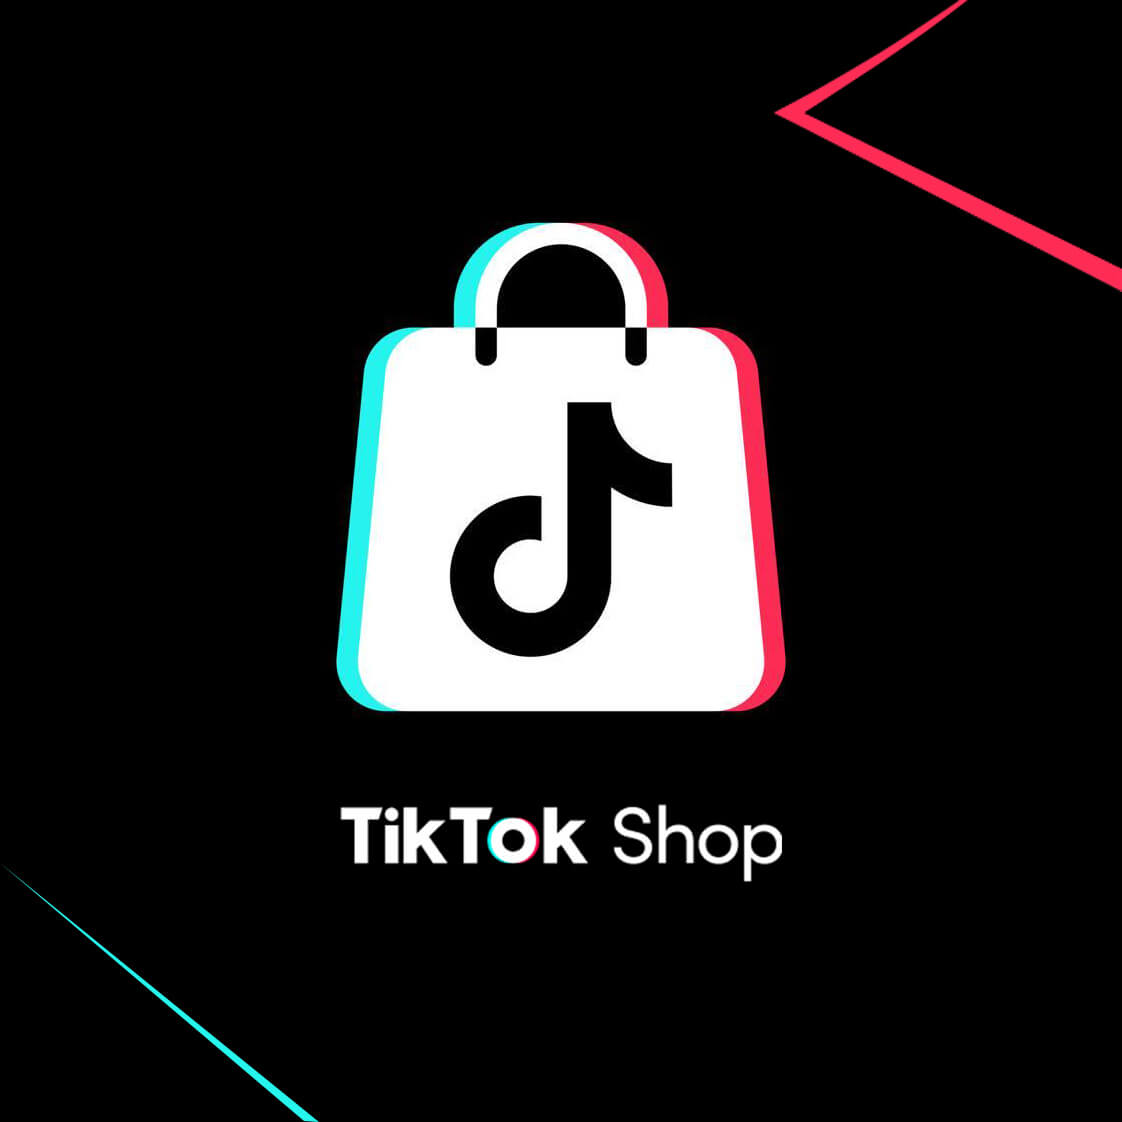 Cách sử dụng TikTokShop đơn giản Hướng dẫn chi tiết cho người mới bắt đầu